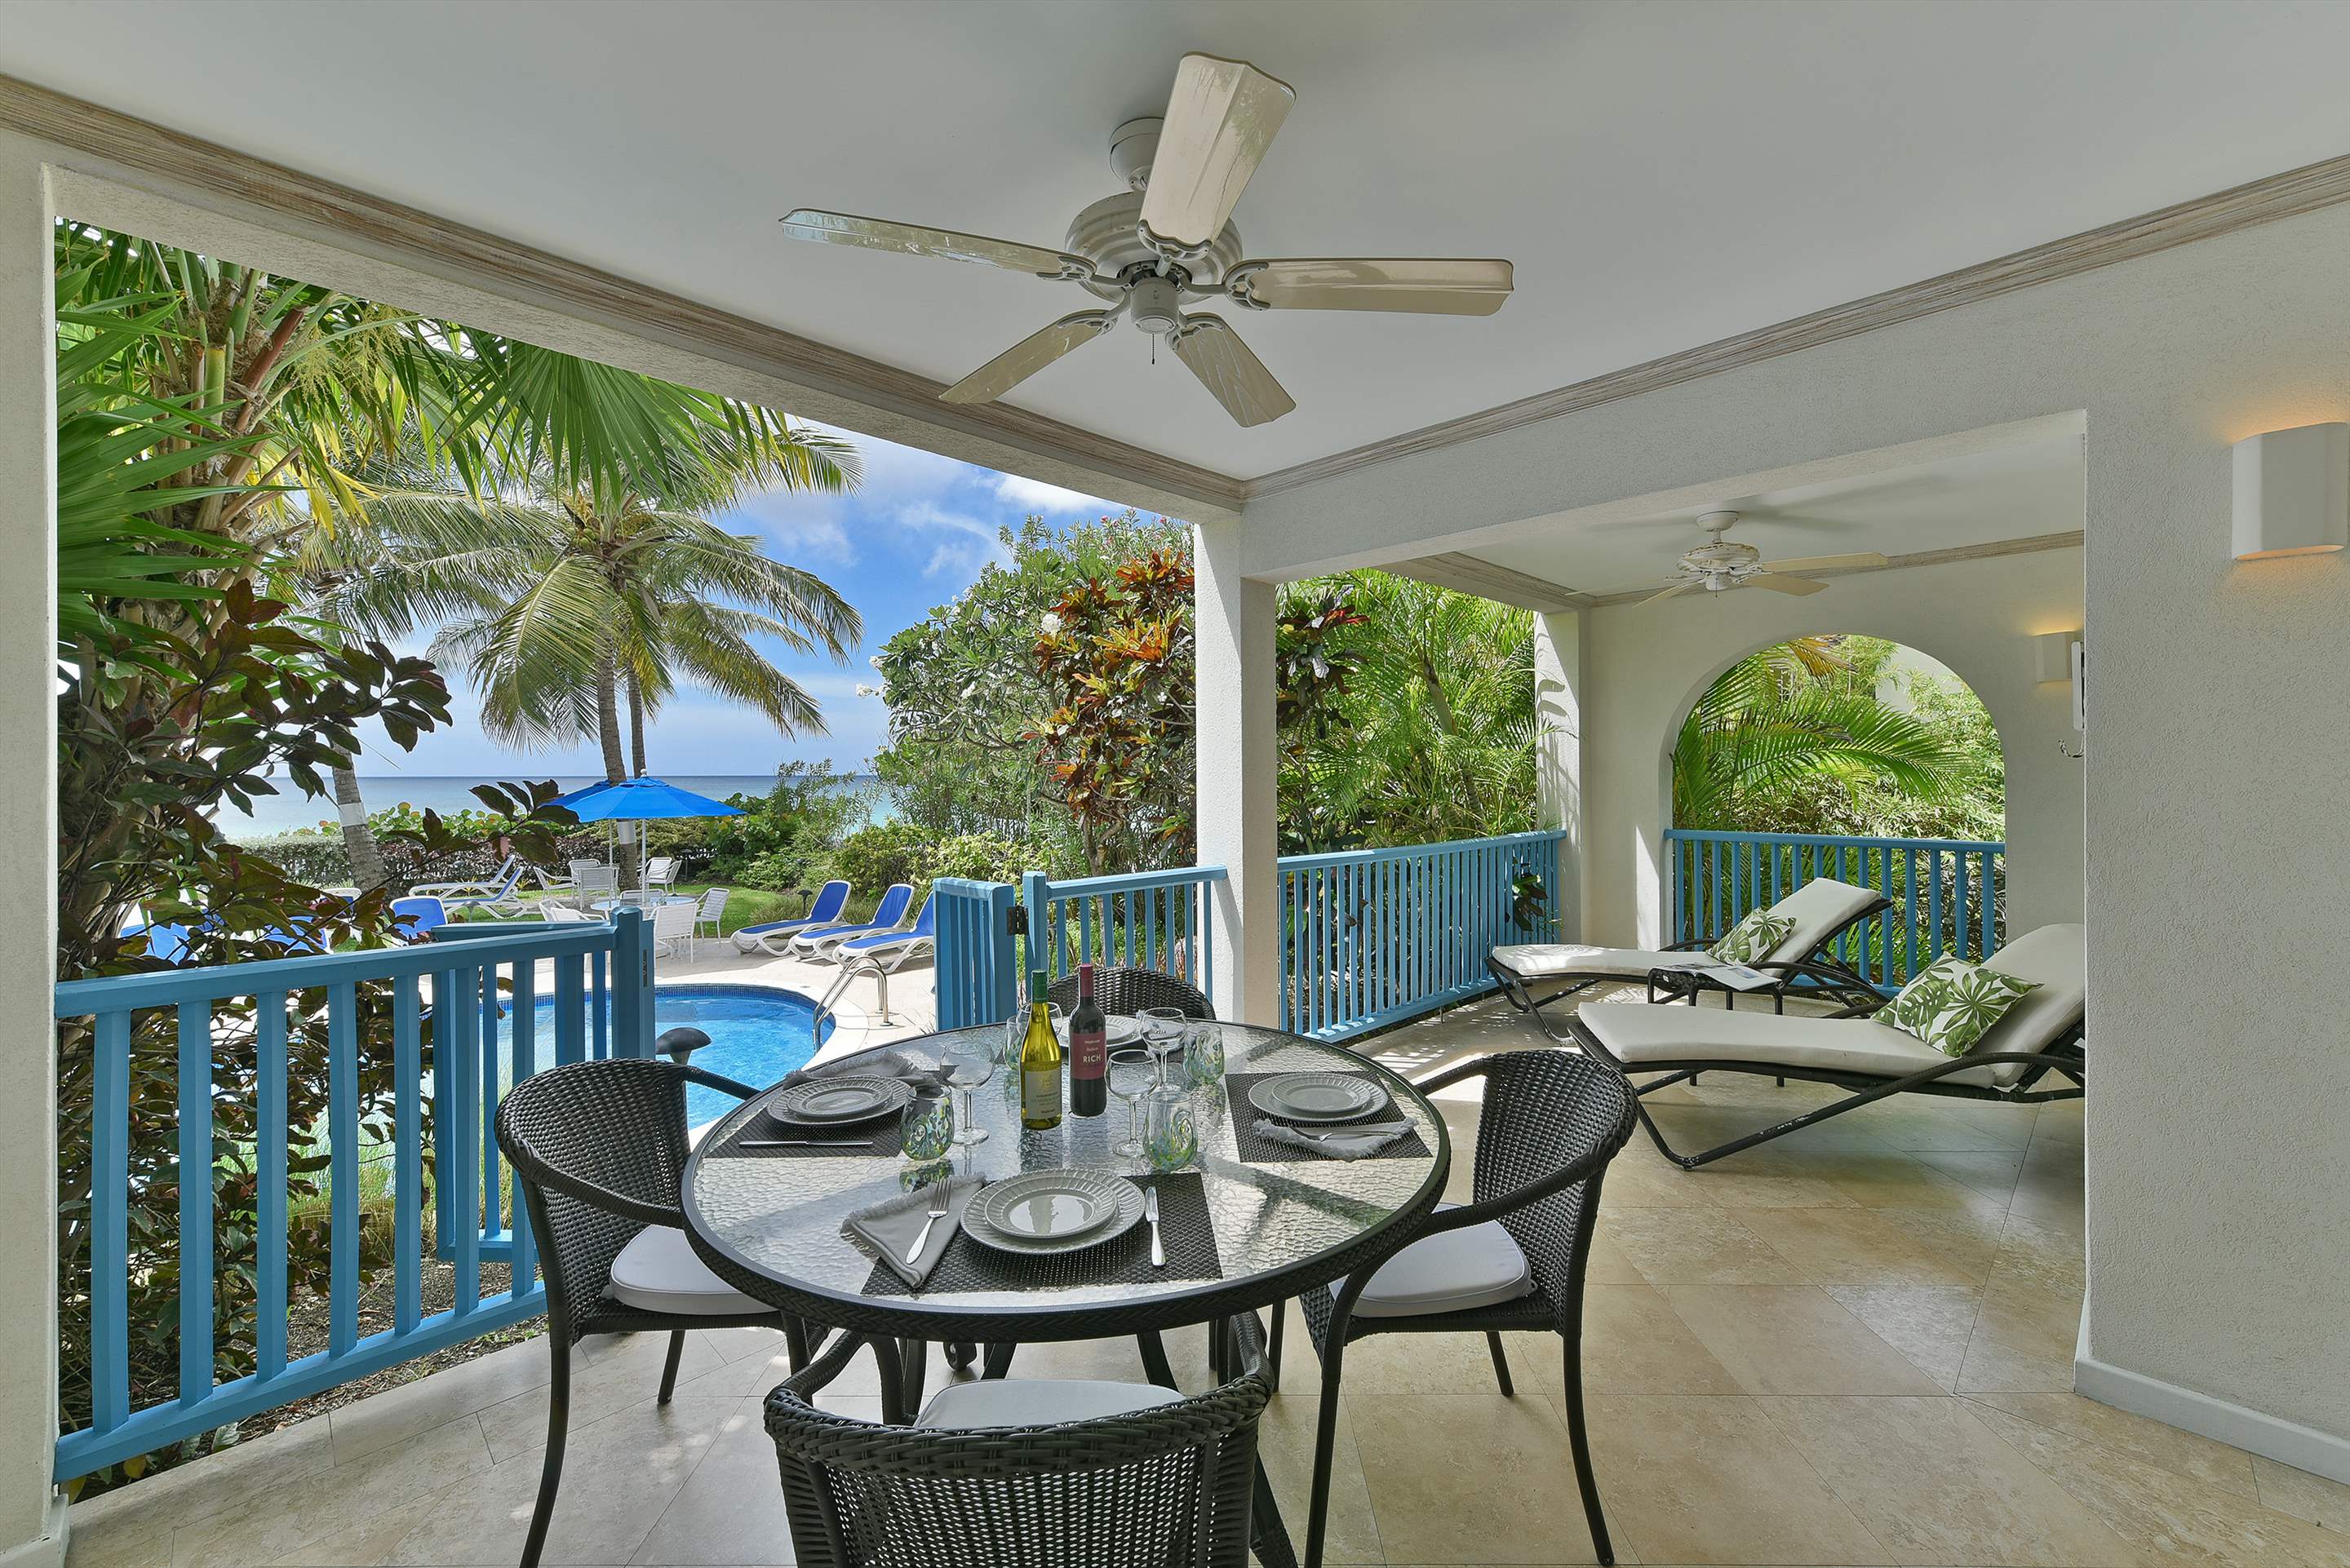 Maxwell Beach Villas 101, 2 bedroom, 2 bedroom apartment in St. Lawrence Gap & South Coast, Barbados Photo #2